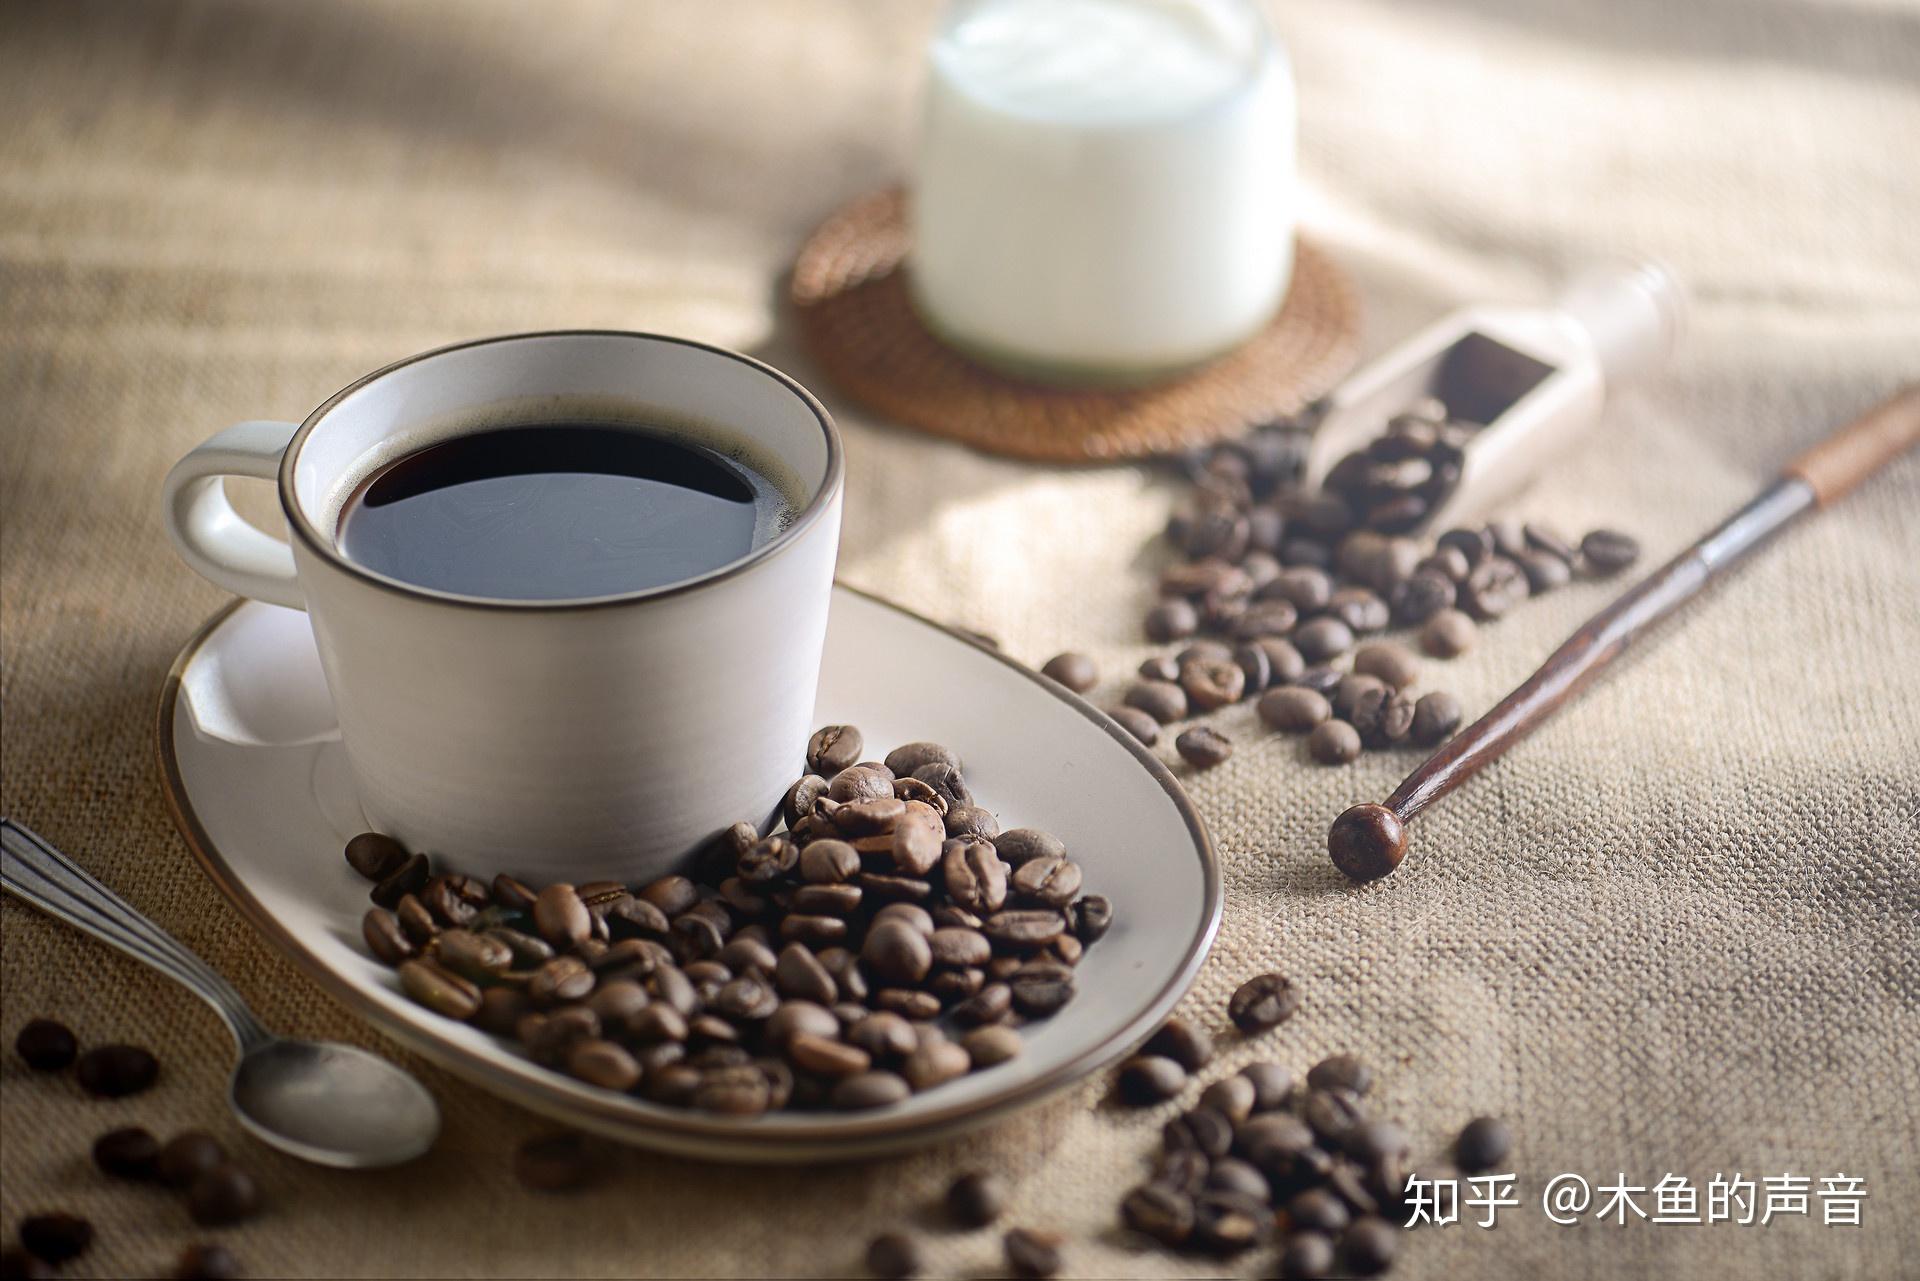 一杯咖啡与咖啡豆的咖啡文化图片 - 免费可商用图片 - cc0.cn